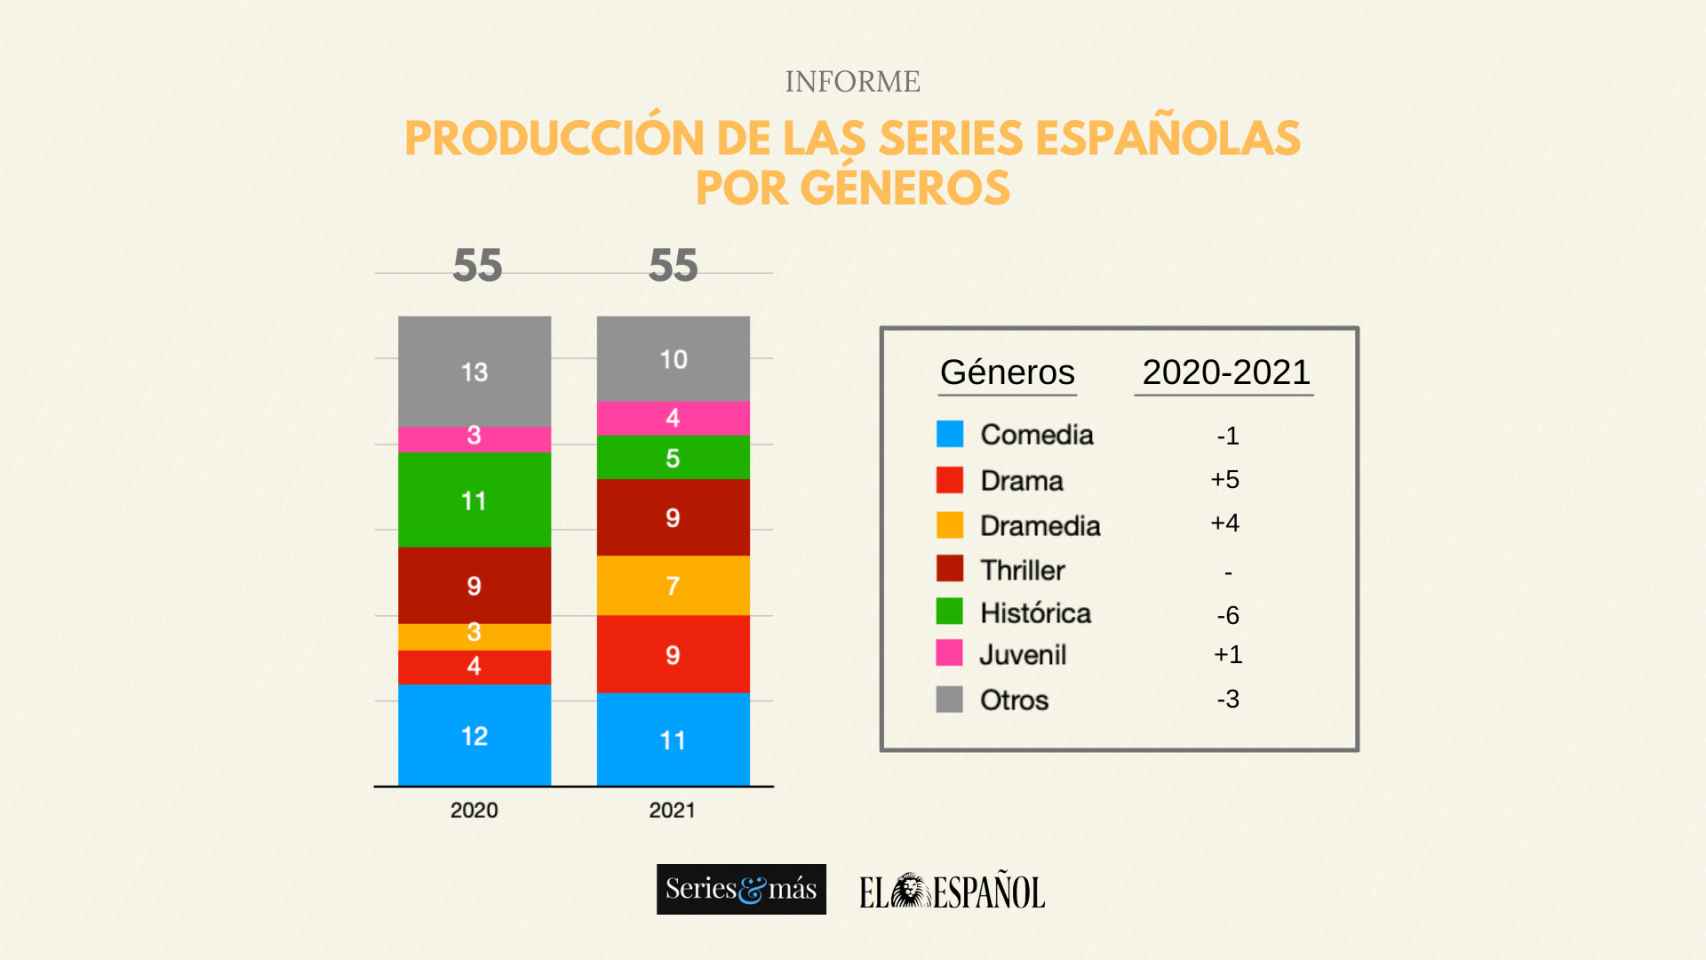 Informe de producción de las series españolas durante 2020 y 2021 por géneros.